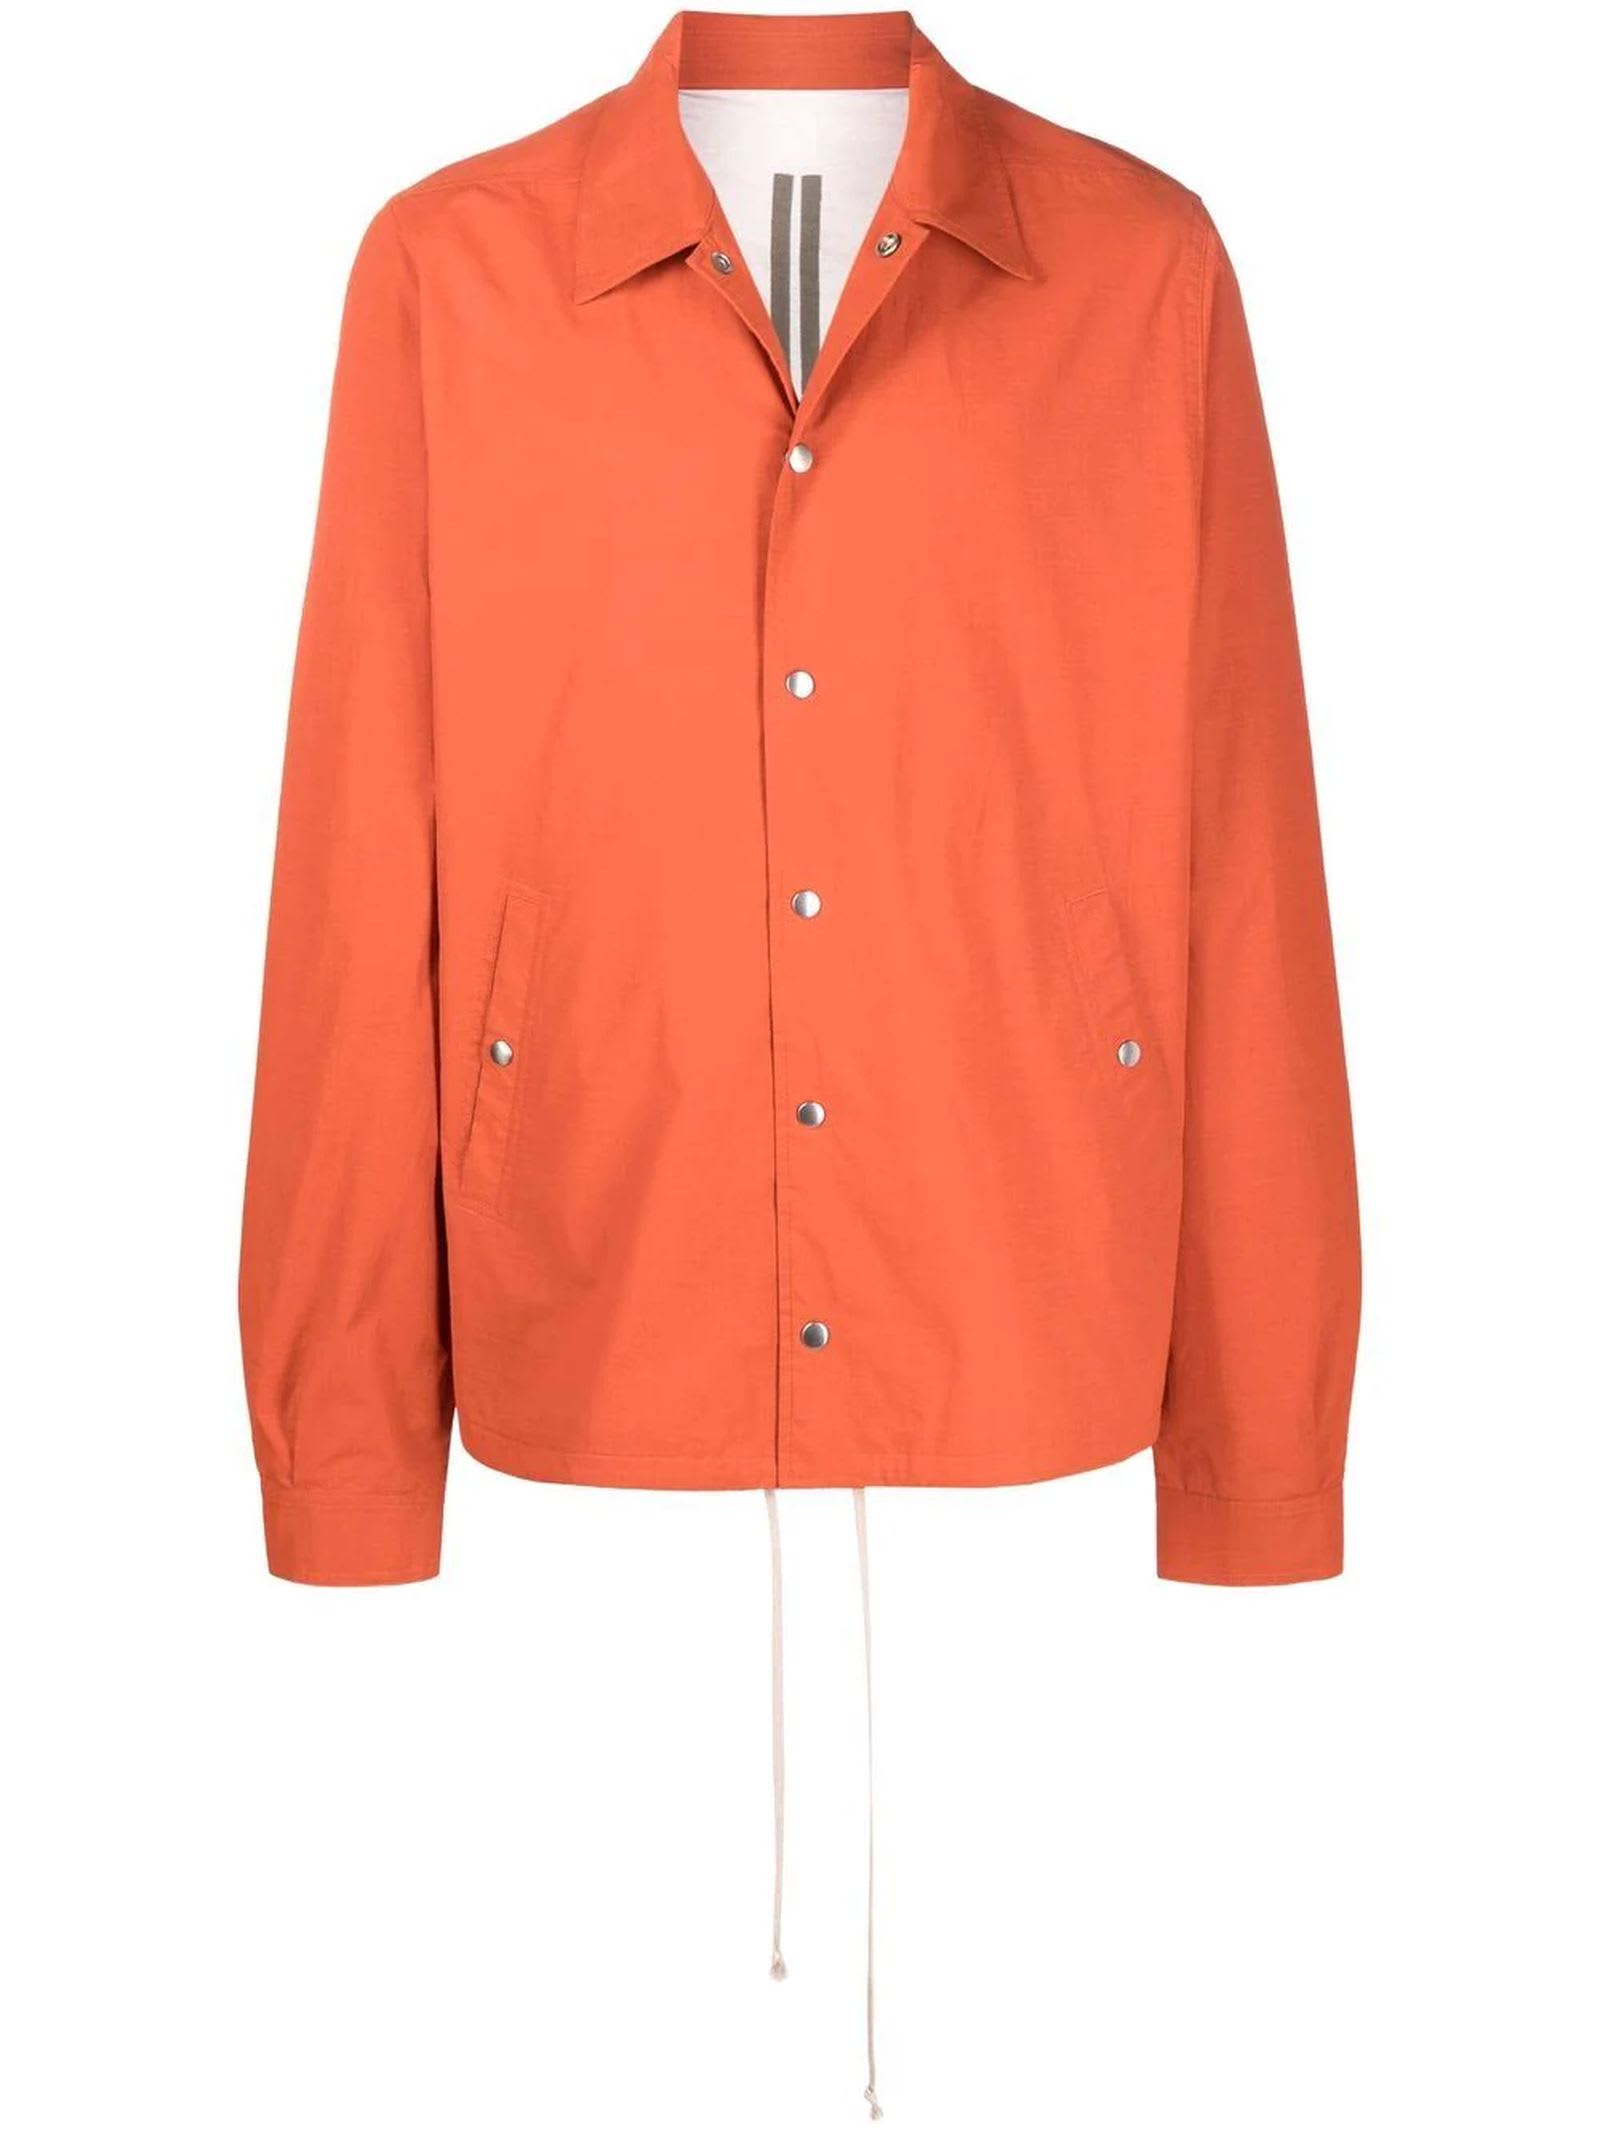 DRKSHDW Orange Cotton Blend Shirt Jacket